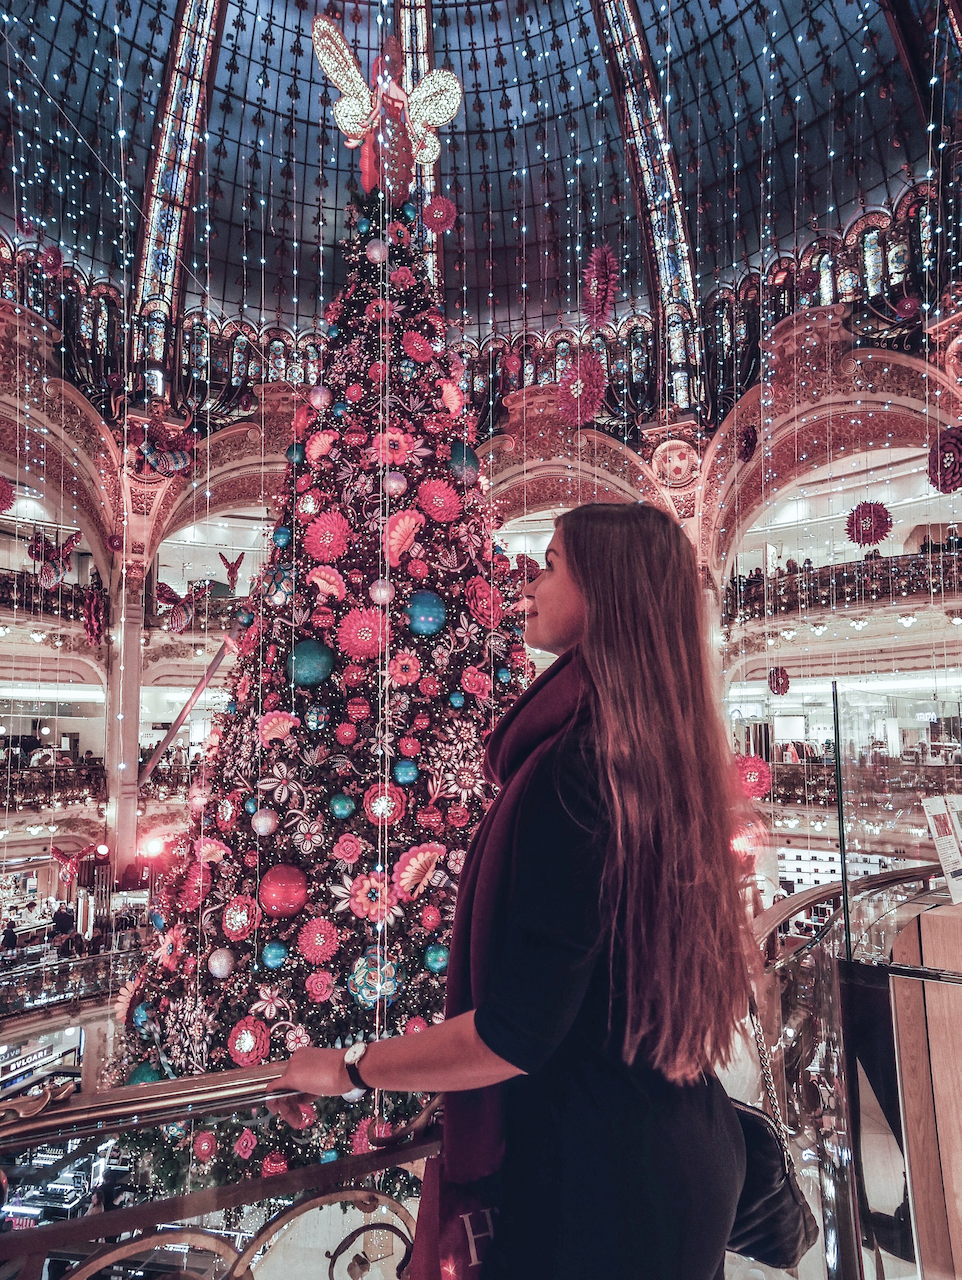 L'arbre de Noël 2019 des galeries Lafayette - Paris - France